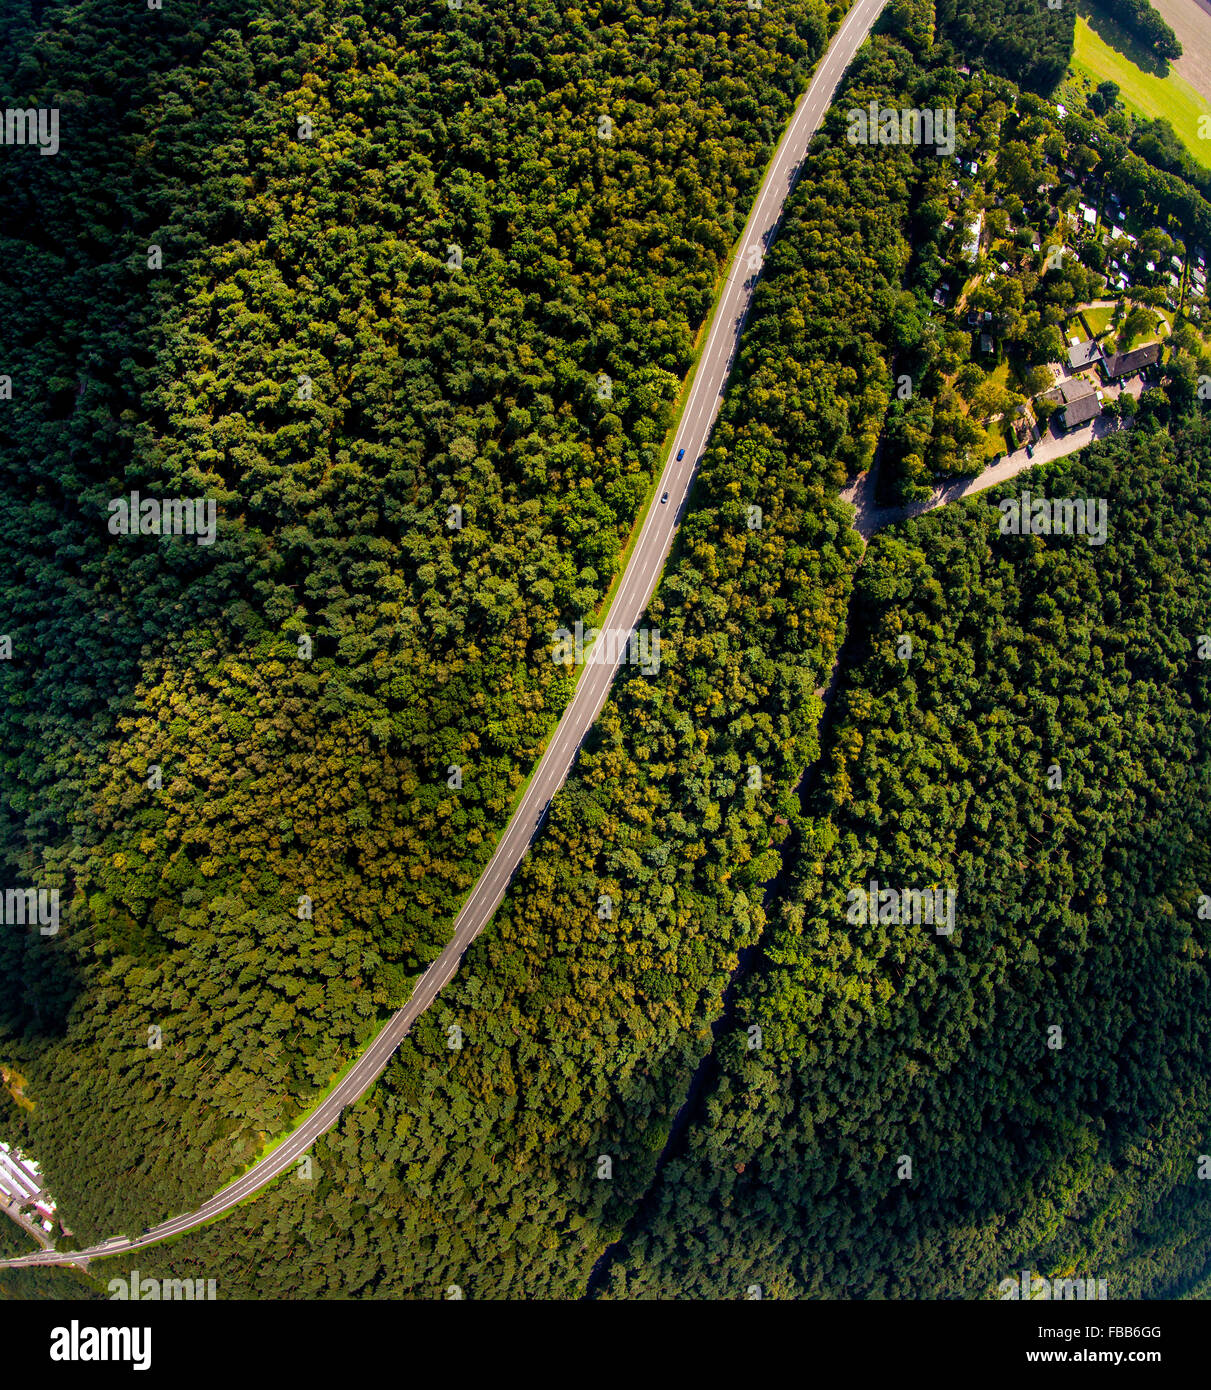 Luftaufnahme, Wald von einem vertikalen Ansicht, Perpendicular Recording, fisheye-Objektiv, Laubwald mit einem s-förmigen Pfad, Haltern Stockfoto